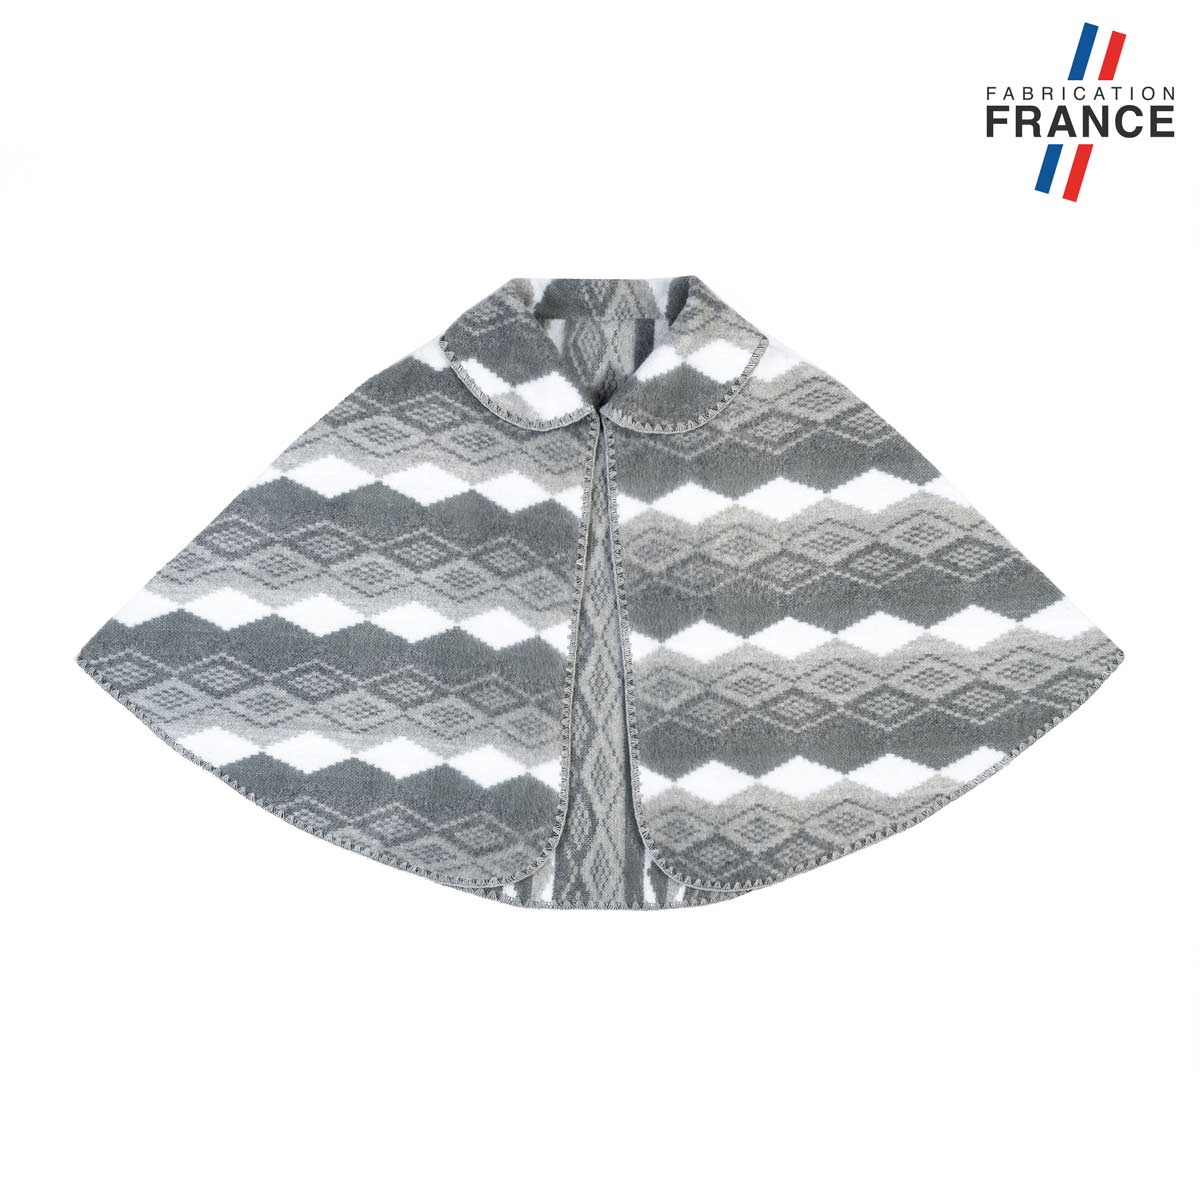 Petite-cape-femme-losange-grise-fabrication-francaise--AT-06868_F12-1FR